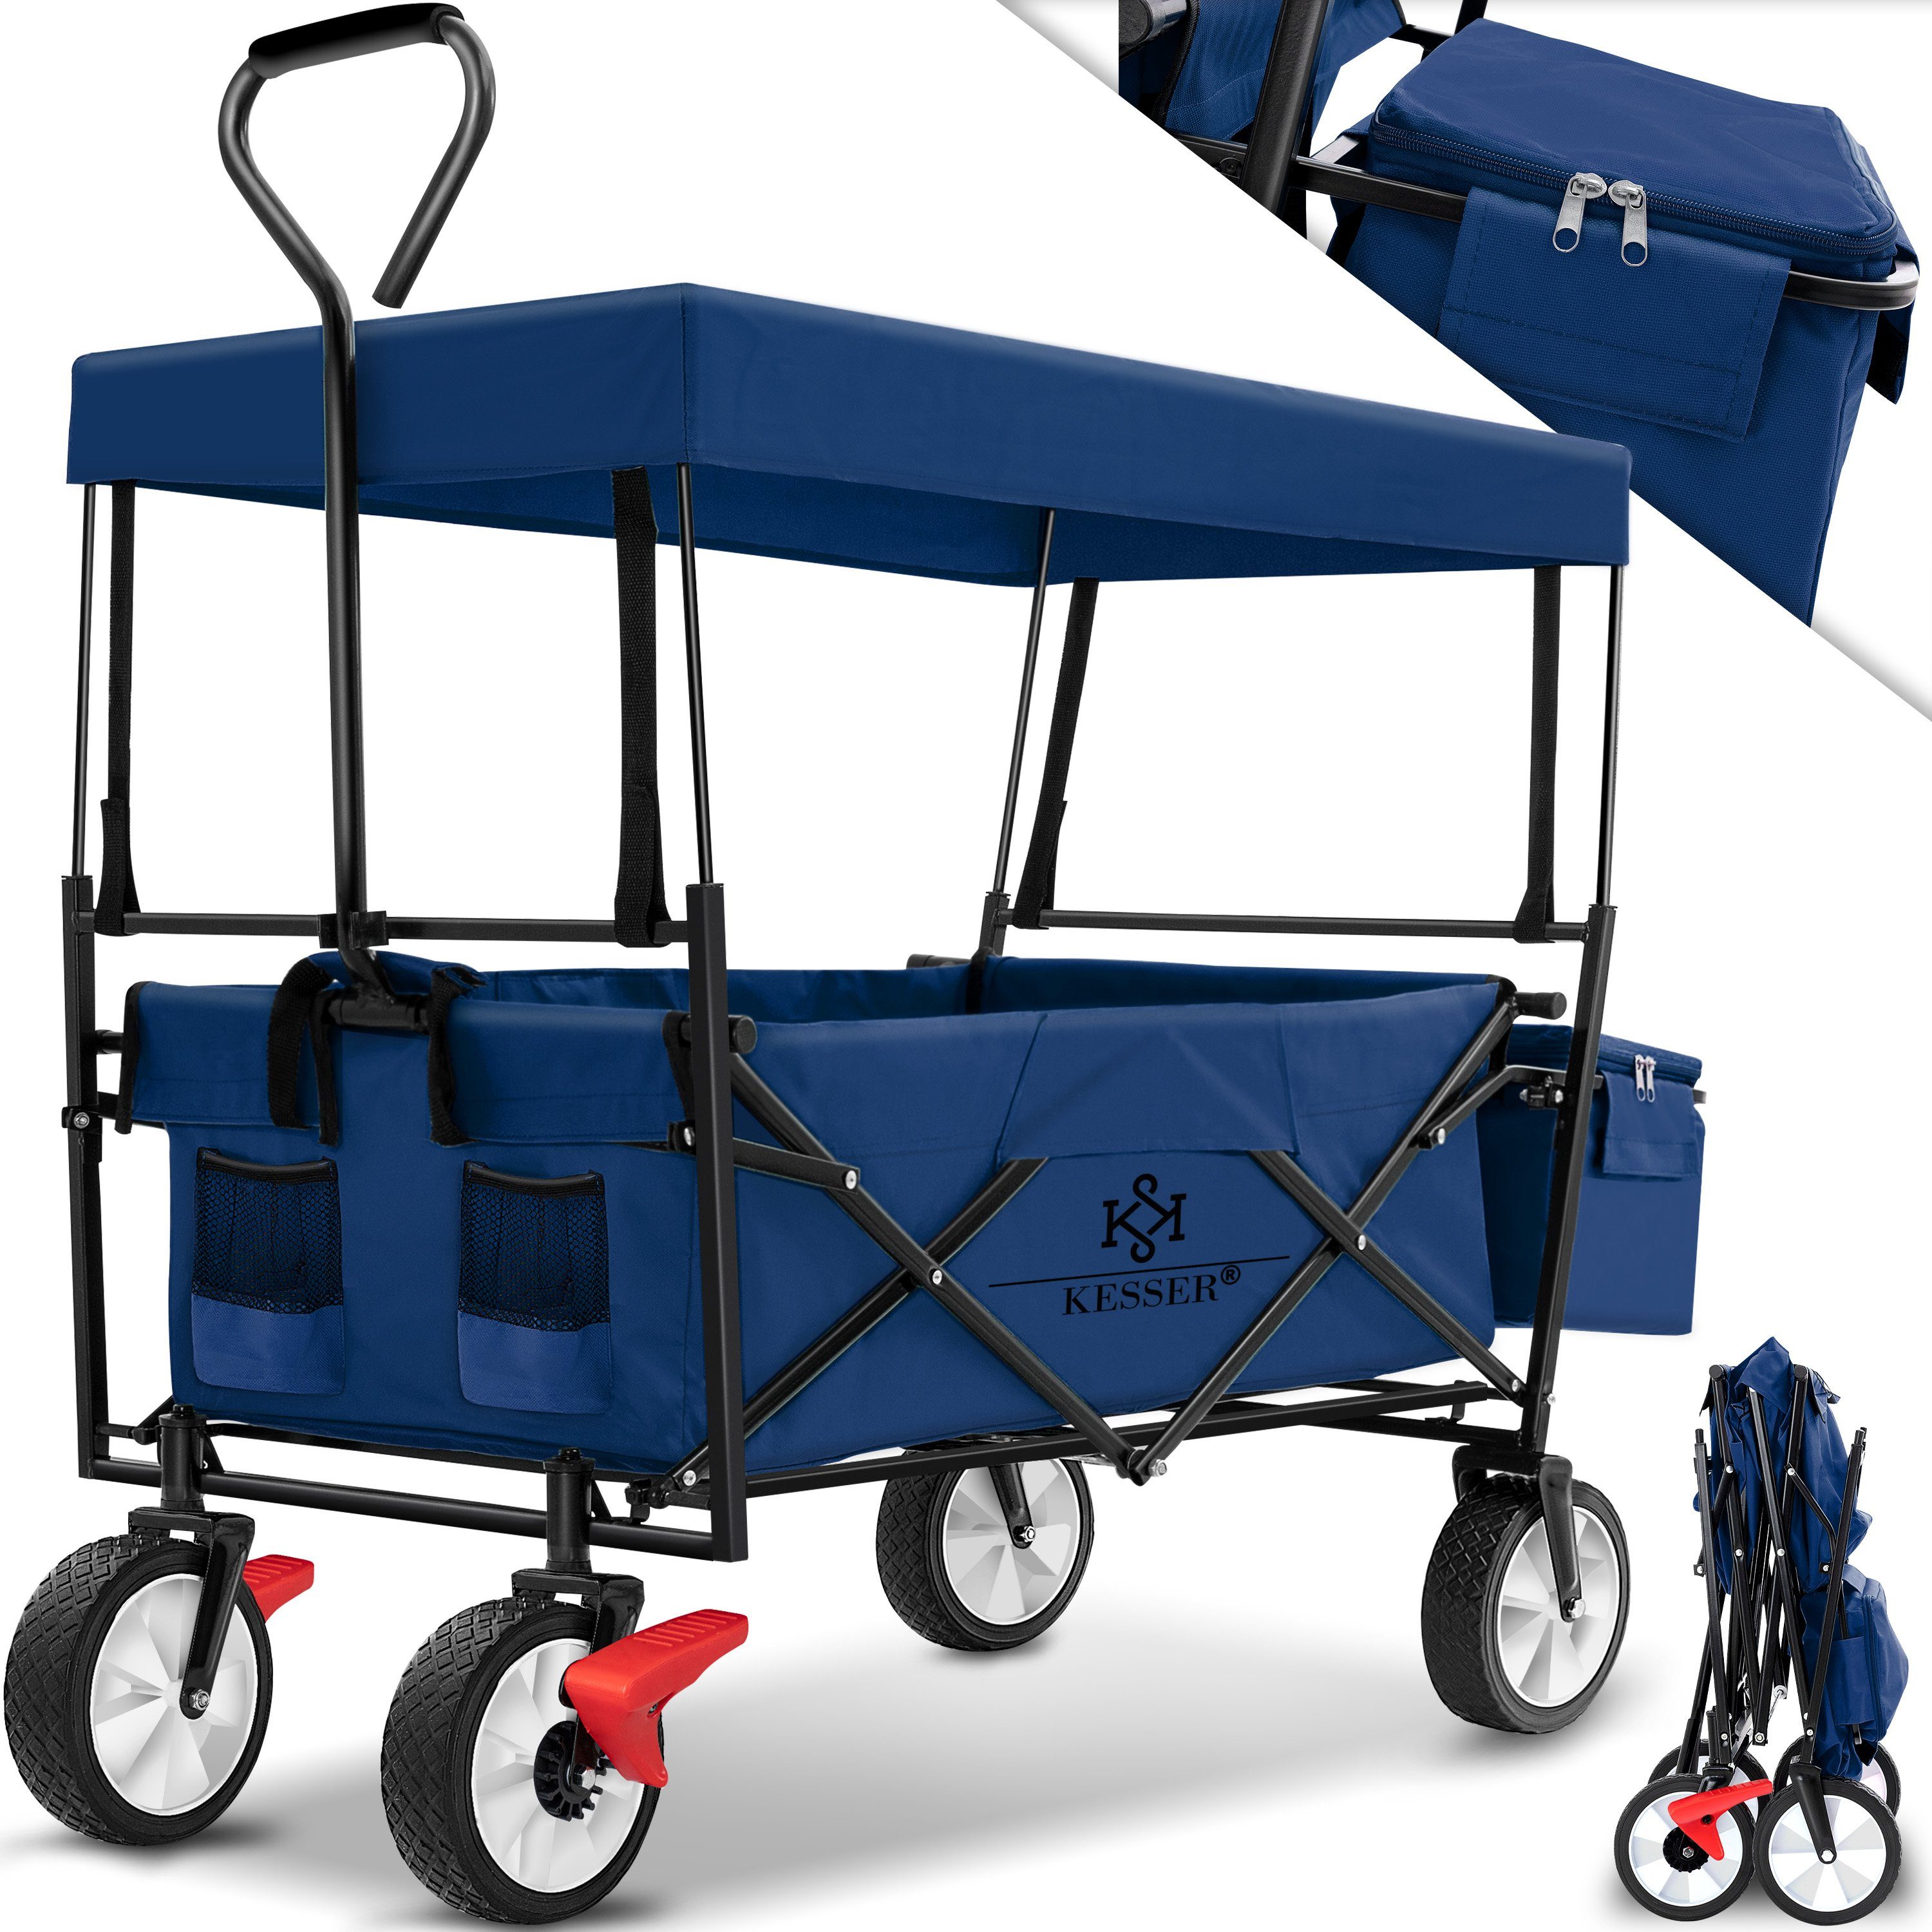 KESSER Bollerwagen, Bollerwagen faltbar Handwagen Geräte Transportkarre mit Dach blau/navy